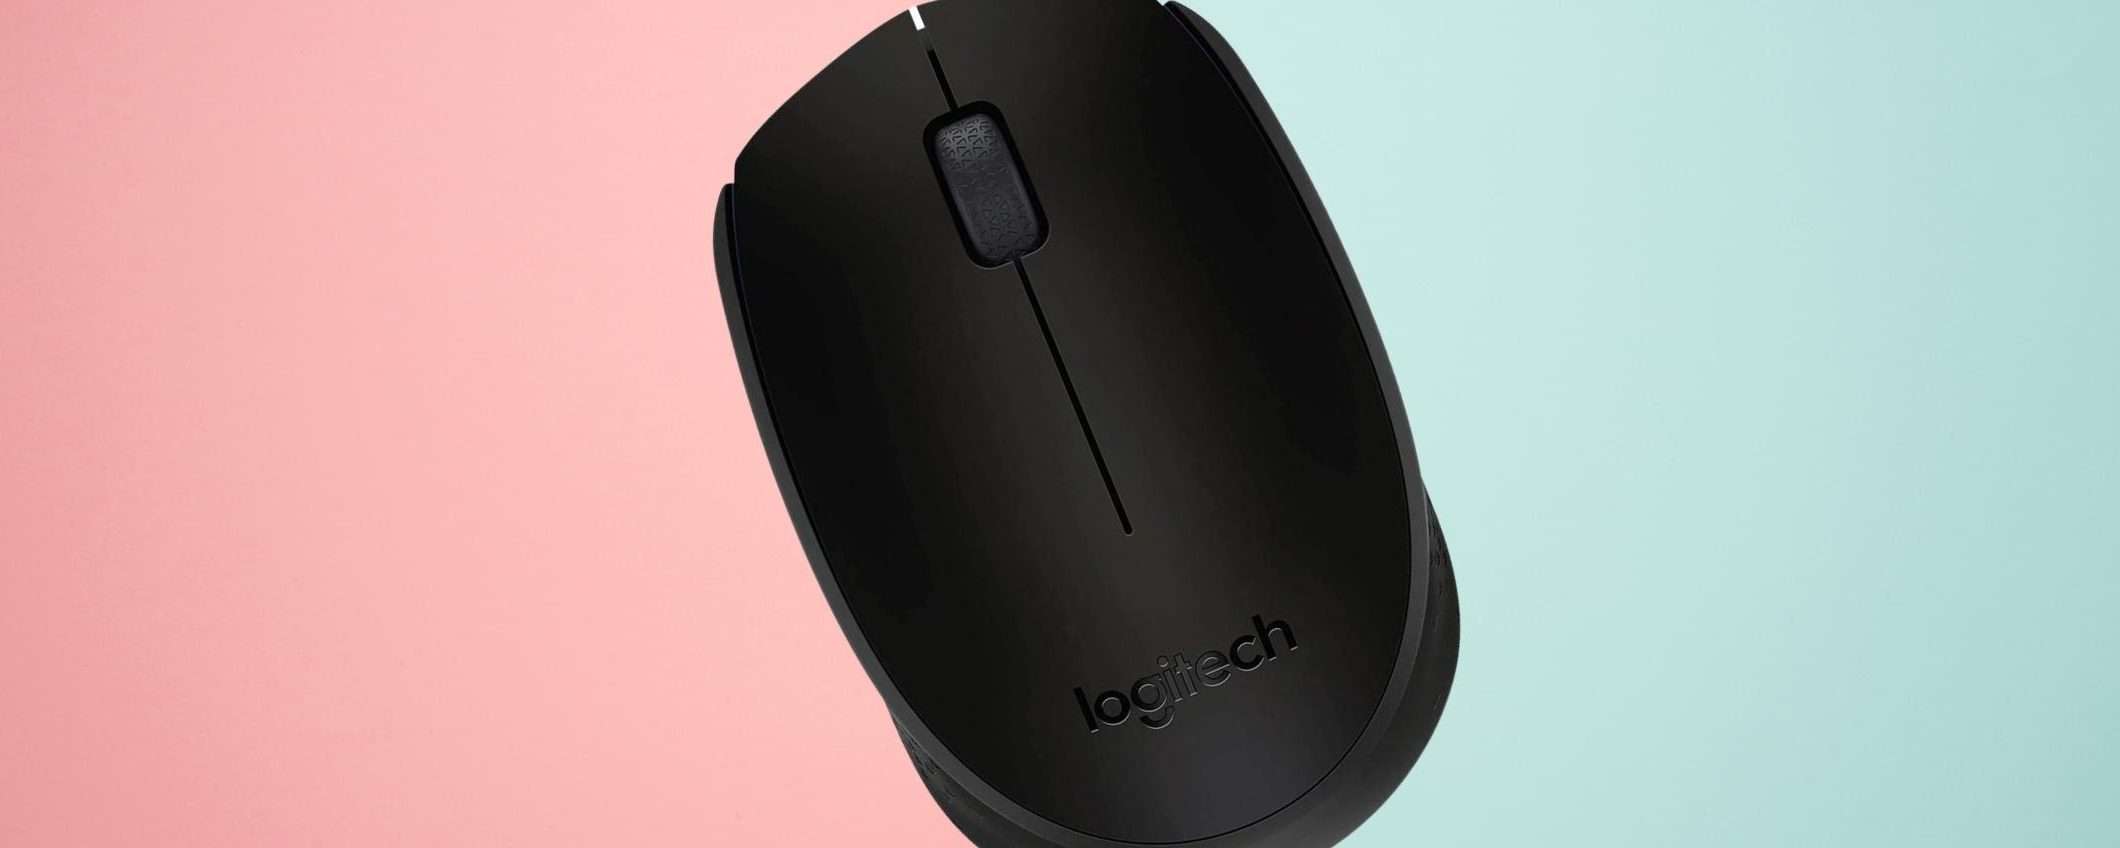 Comodità assoluta con il mouse wireless Logitech a prezzo irrisorio